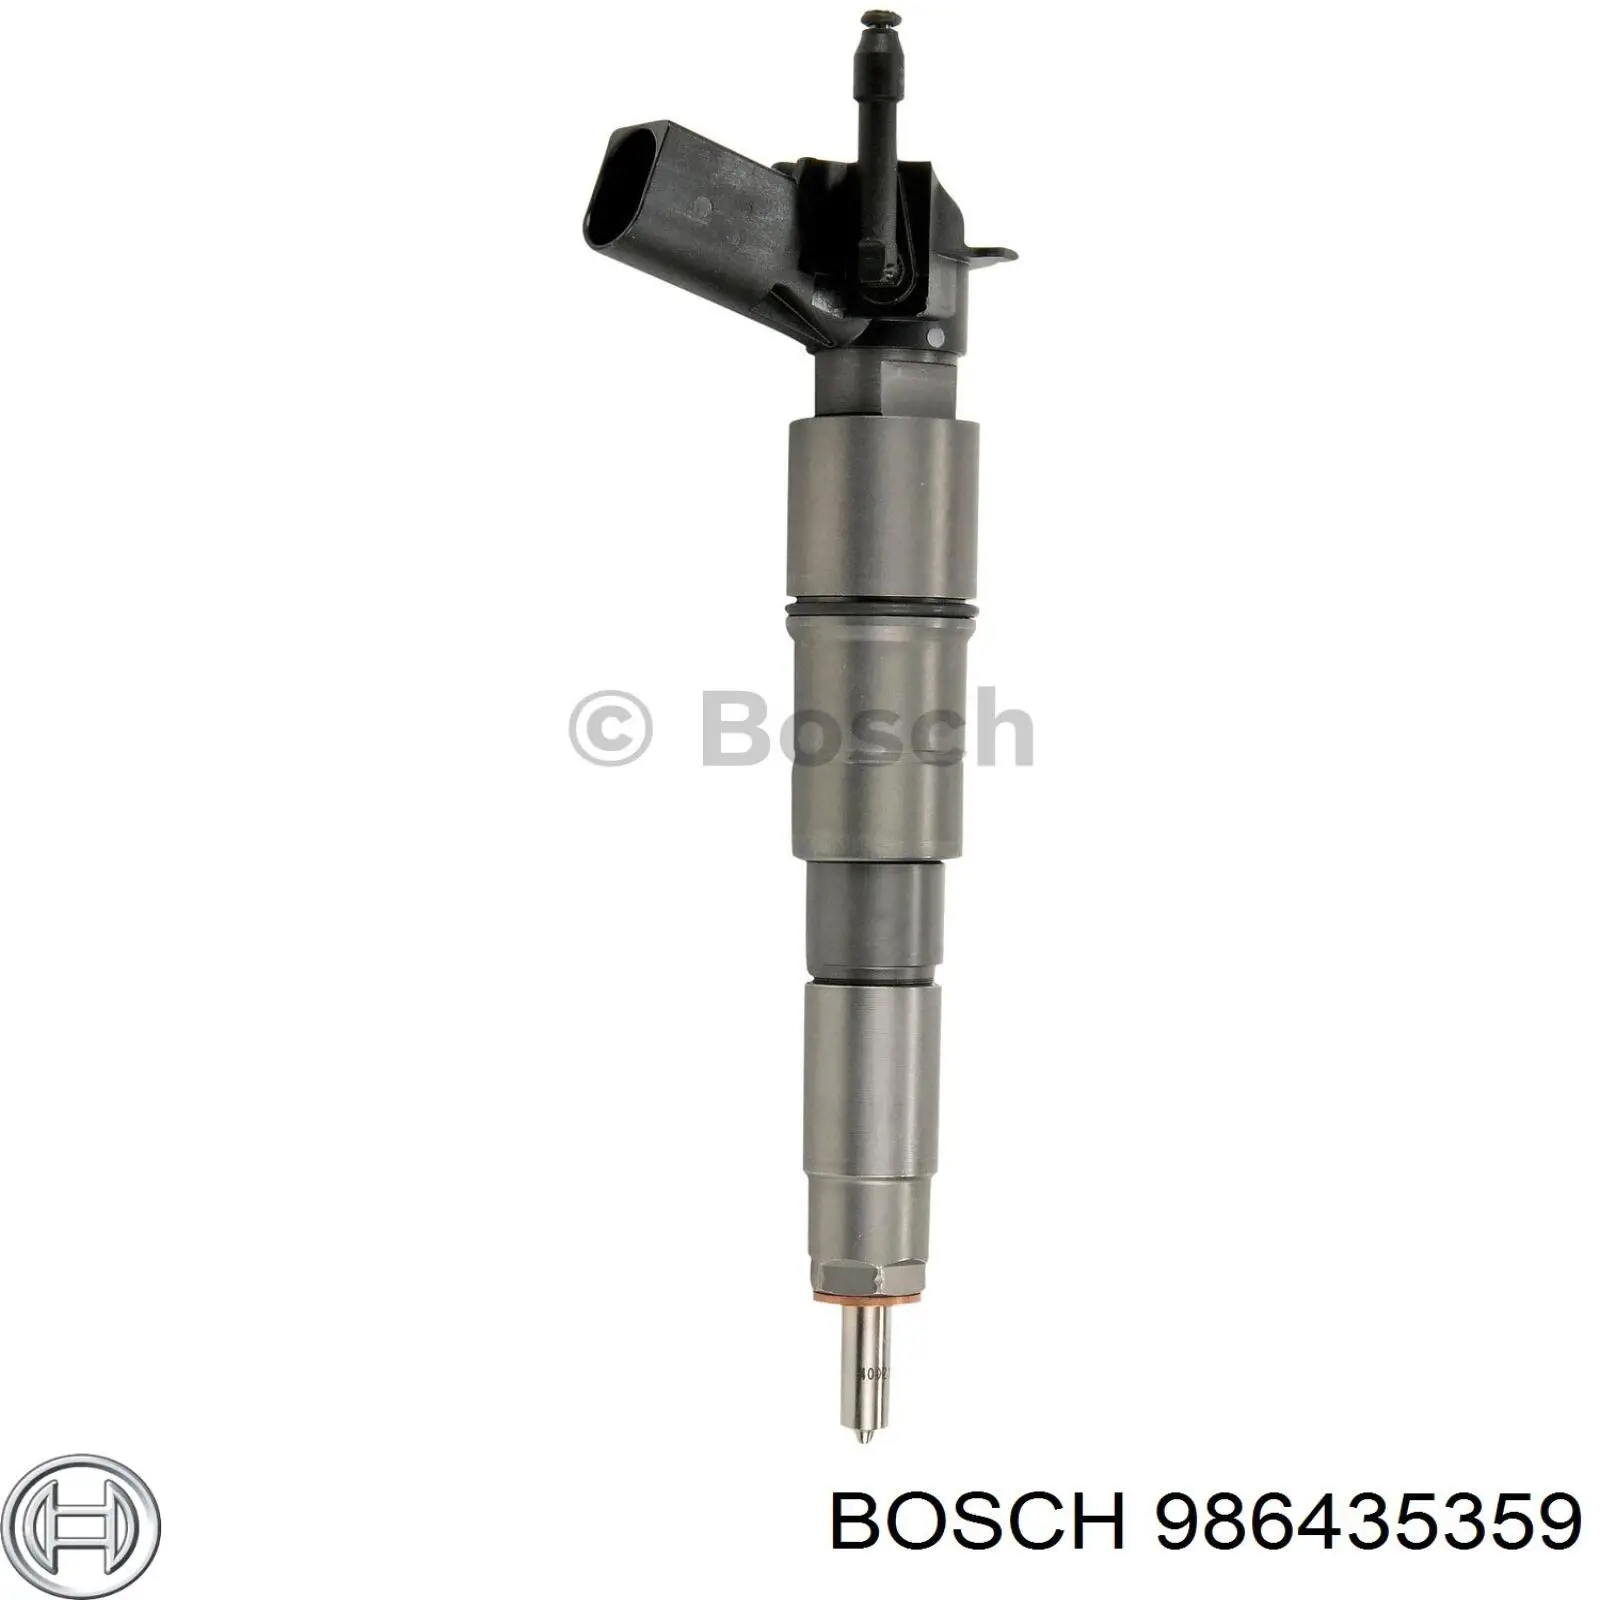 986435359 Bosch injetor de injeção de combustível